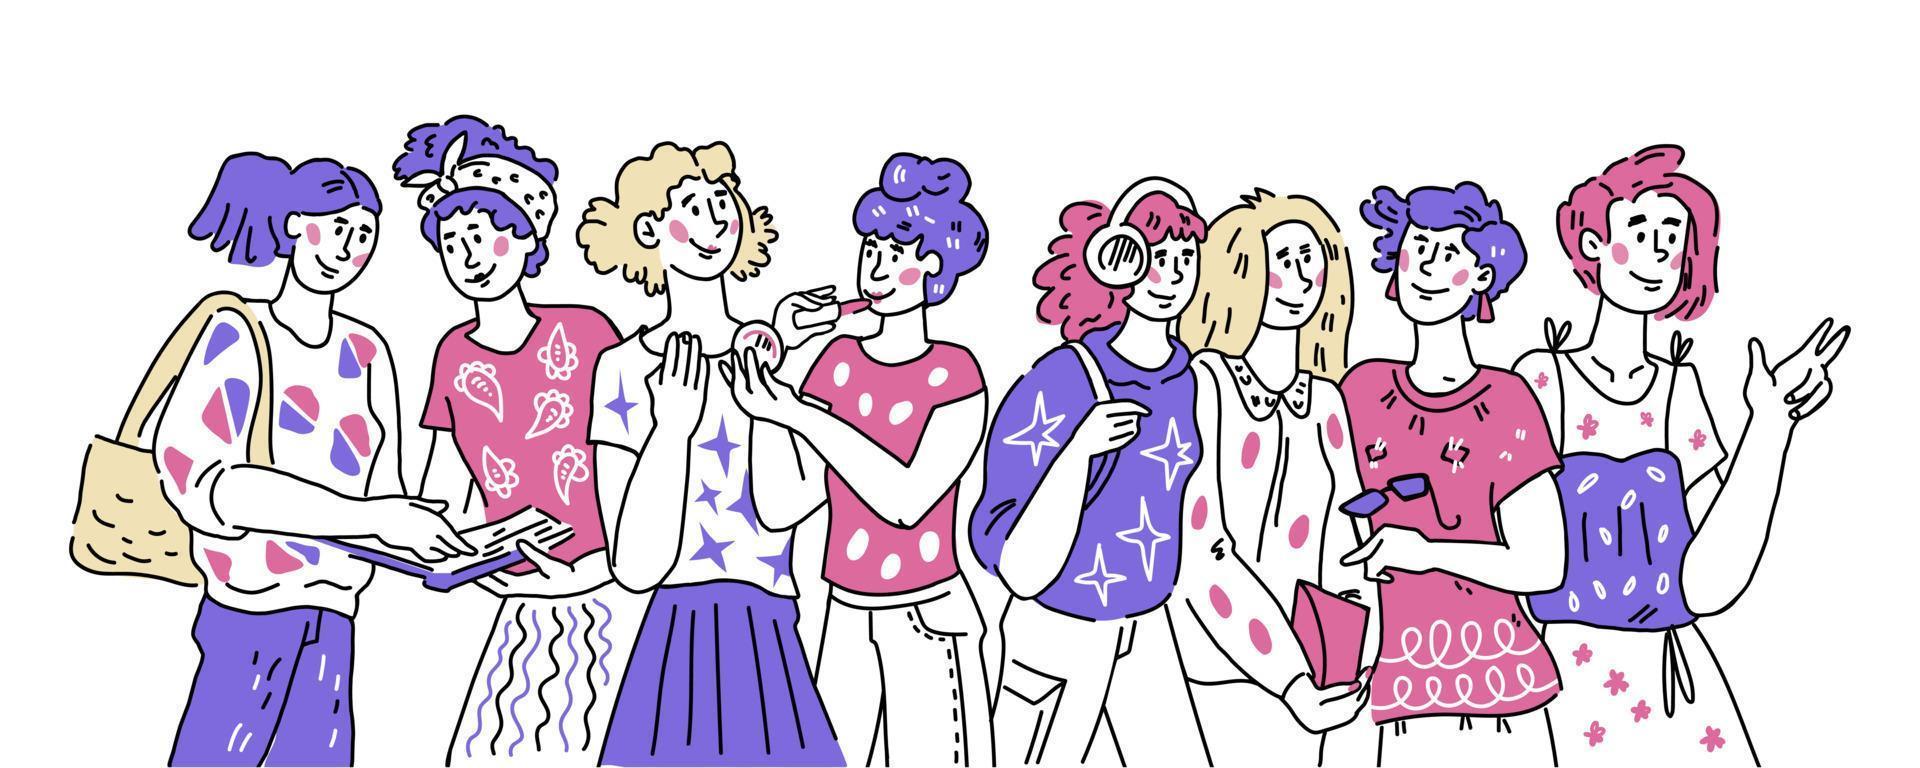 pancarta con un grupo de mujeres diversas personajes de dibujos animados que se comunican y hablan amistosamente. amistad femenina, día de la mujer y temática del feminismo. ilustración vectorial en estilo boceto aislado. vector